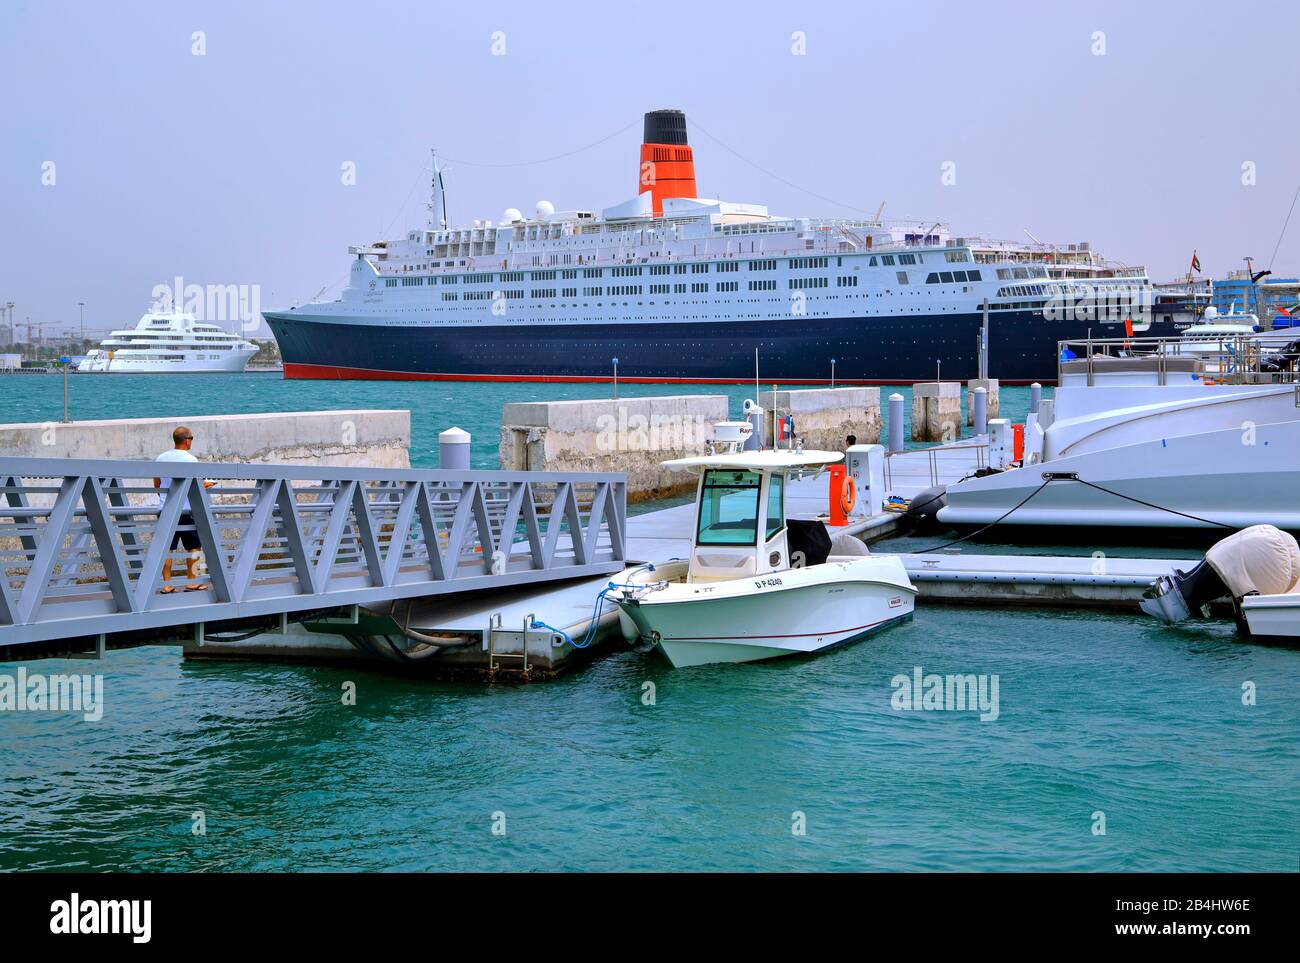 Hotel e museo nave Queen Elizabeth 2 (QE2) nel porto, Dubai, Golfo Persico, Emirati Arabi Uniti Foto Stock